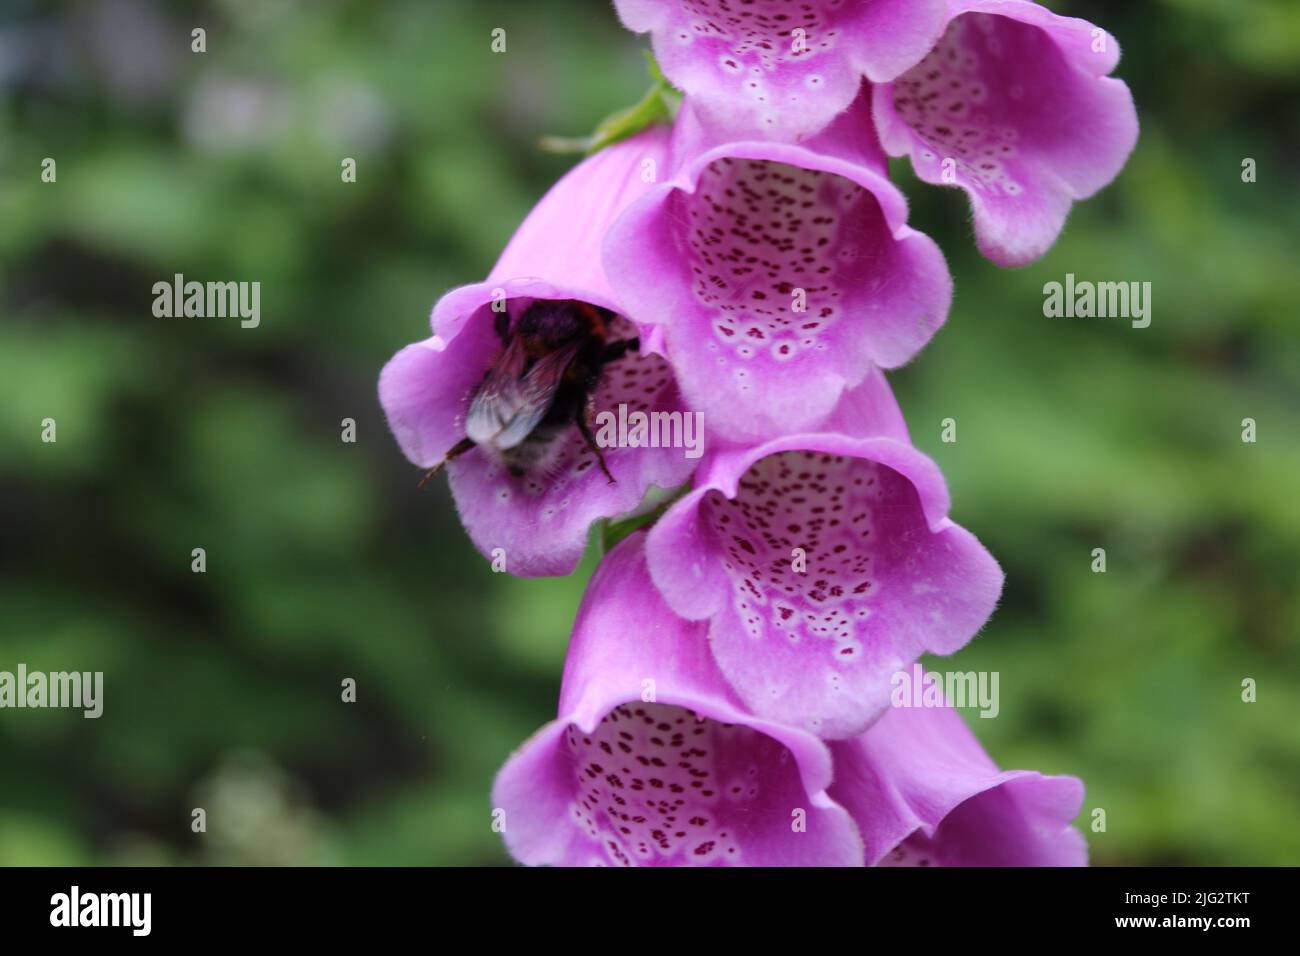 Un closeup estremo utilizzando un obiettivo macro. Il colpo è di un'ape che inquina un fiore di hollyhock rosa in un giardino. Il dettaglio dei petali è visibile. Foto Stock